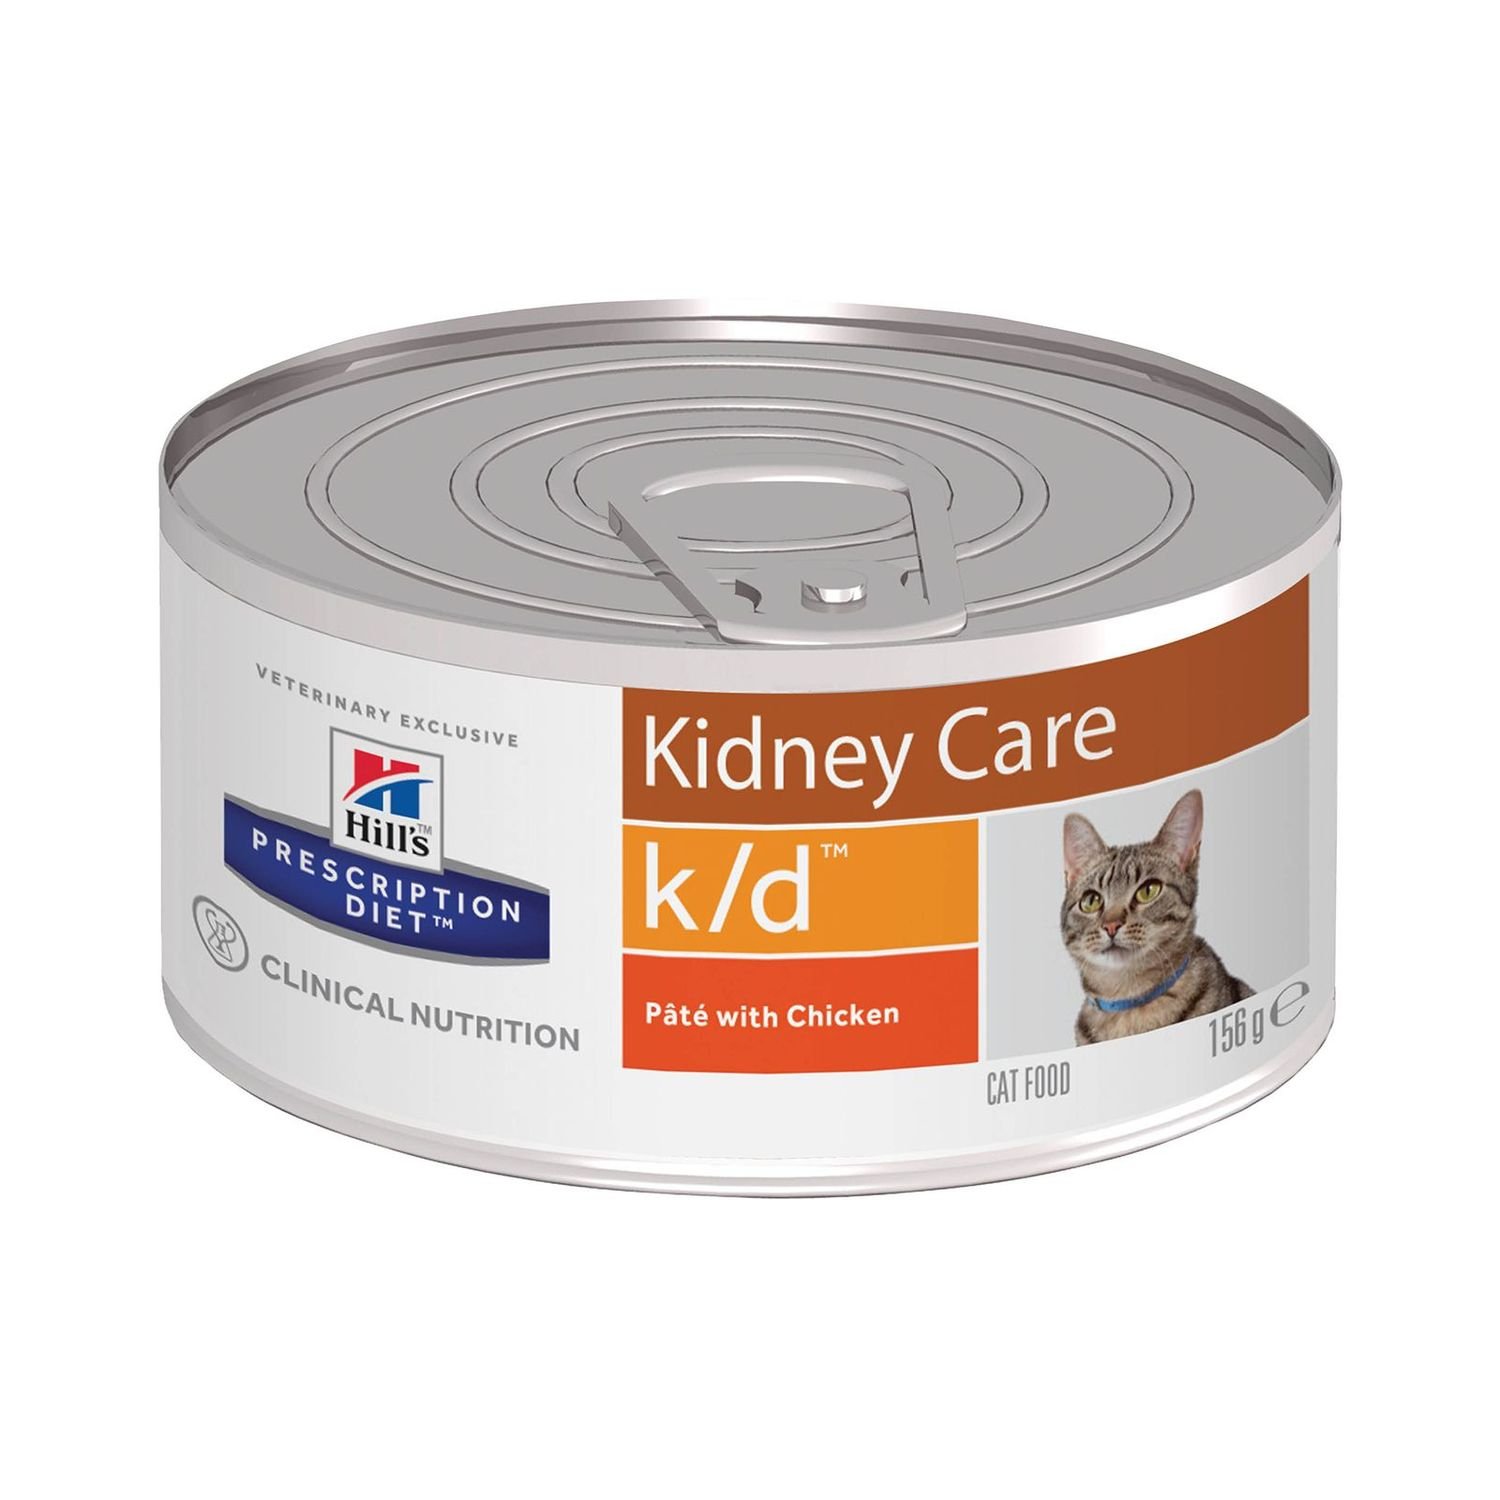 Корм для кошек HILLS 156г Prescription Diet k/d Kidney Care для почек с курицей консервированный - фото 1